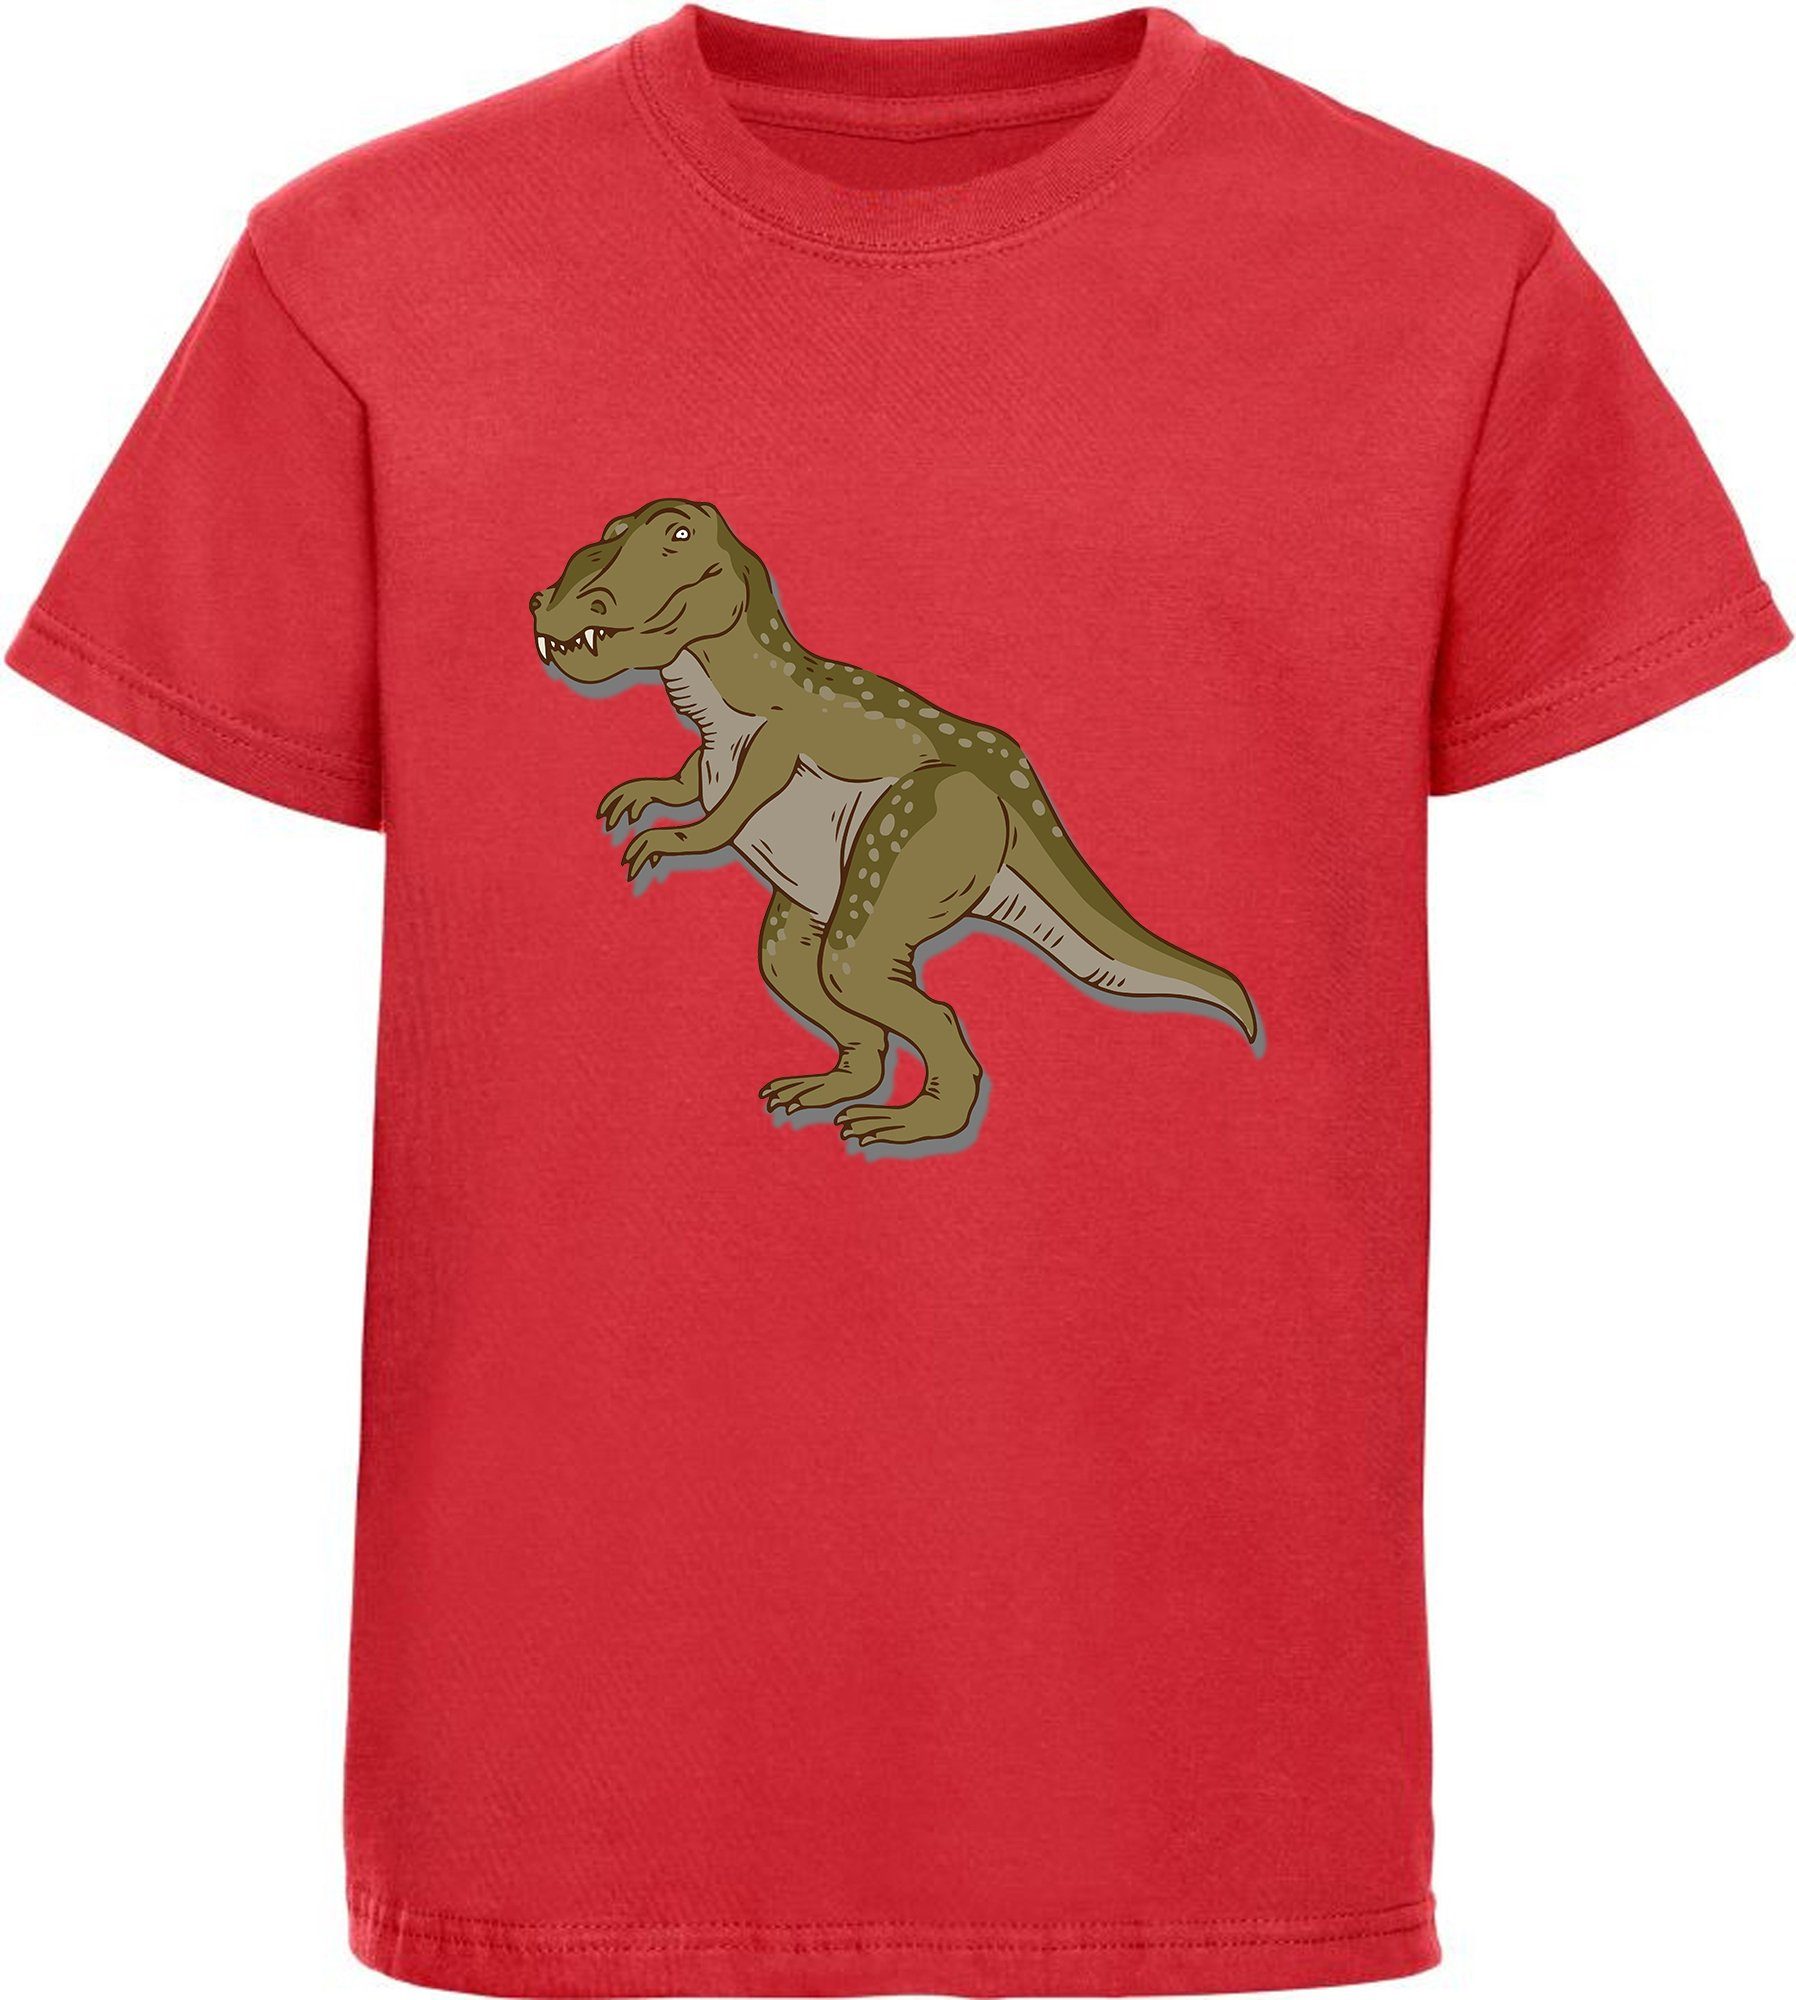 MyDesign24 Print-Shirt bedrucktes Kinder T-Shirt mit Tyrannosaurus Rex Baumwollshirt mit Dino, schwarz, weiß, rot, blau, i69